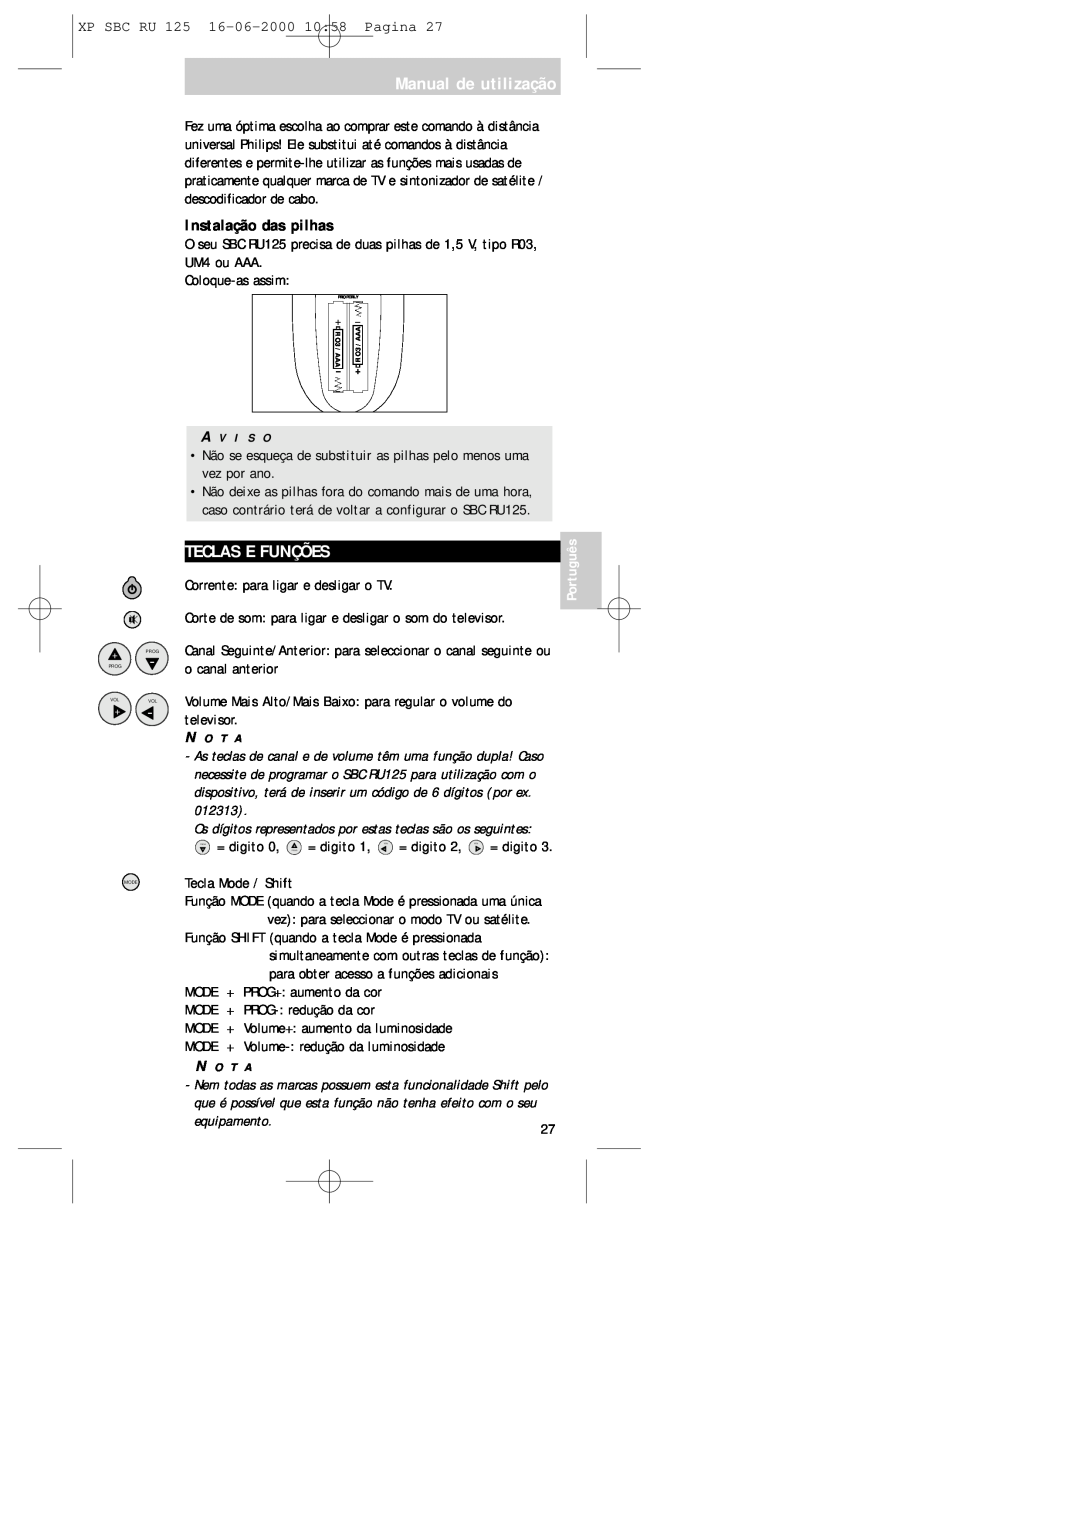 Philips RU125 manual Manual de utilização, Teclas E Funções, Instalação das pilhas 